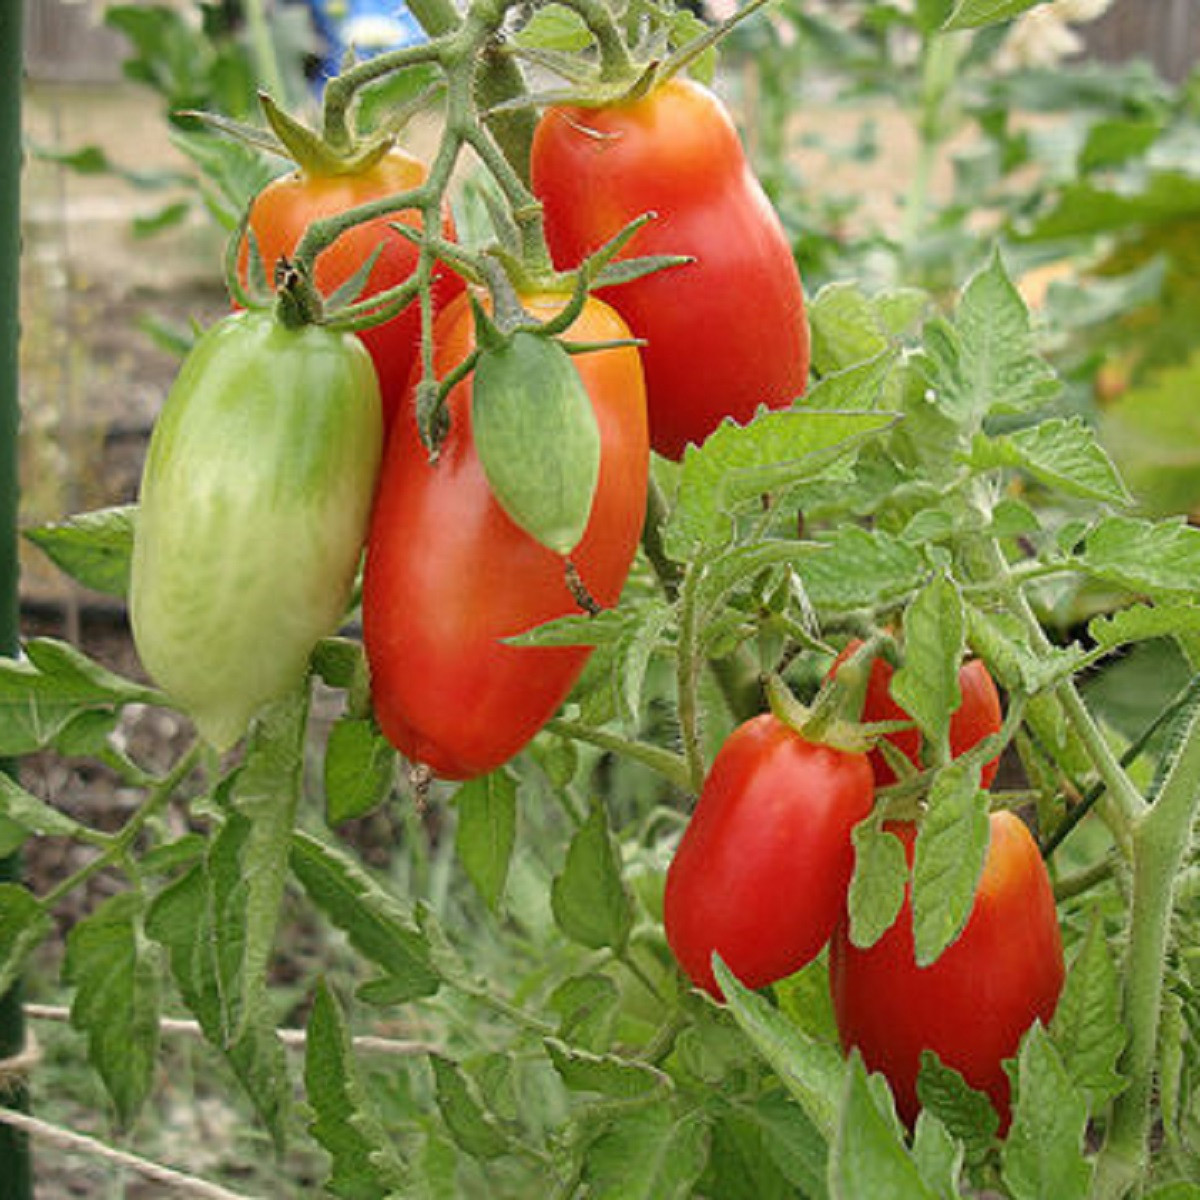 BIO Rajče San Marzano - Solanum lycopersicum - bio semena rajčete - 7 ks